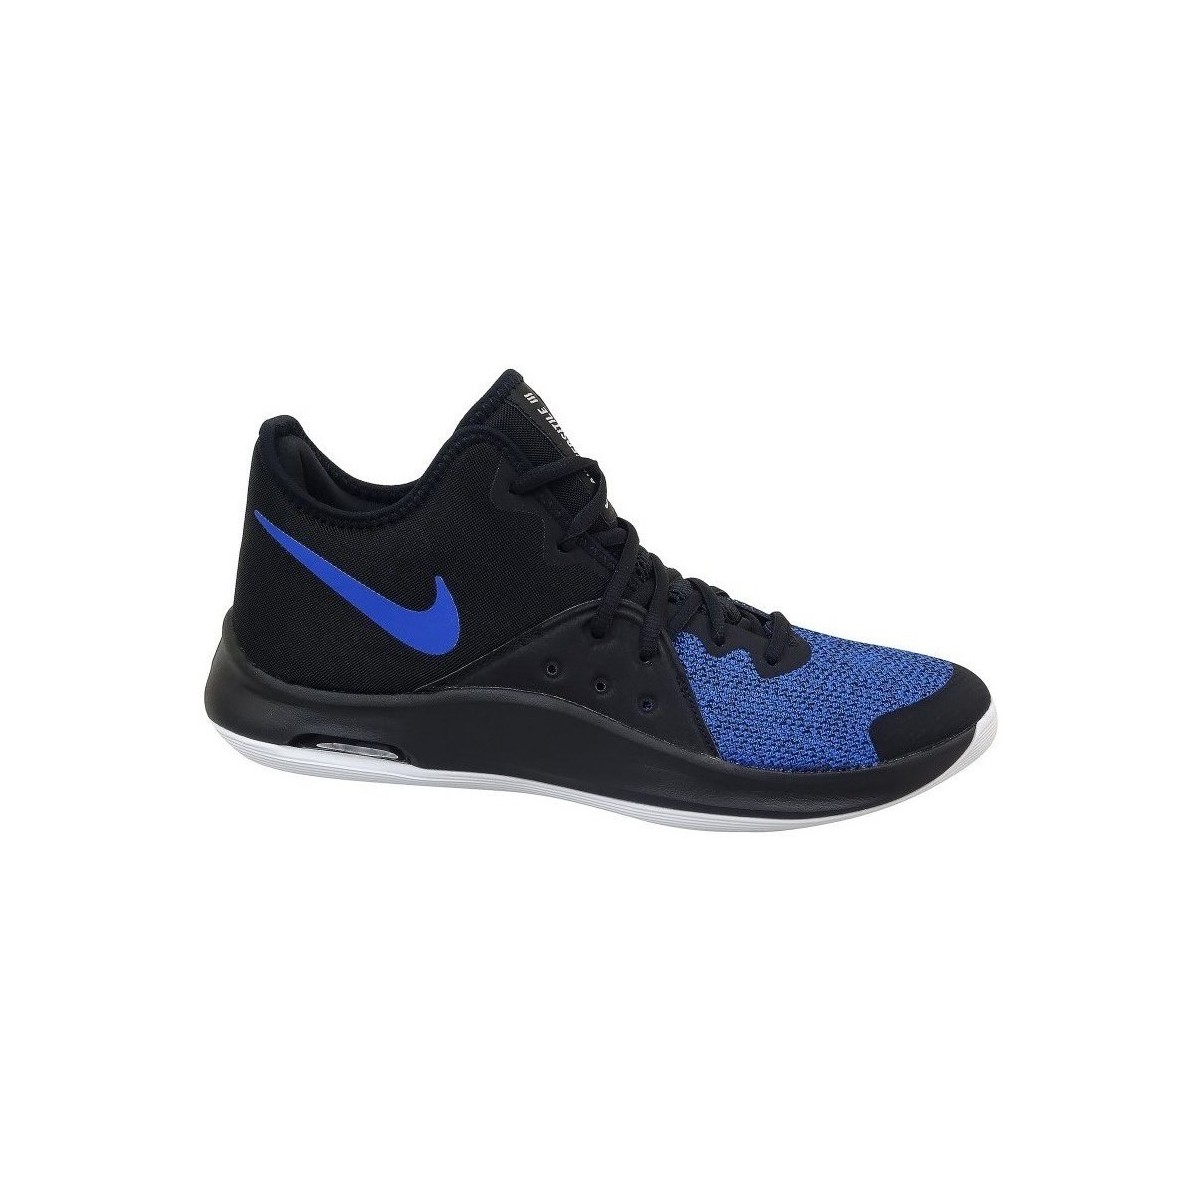 Zapatos Hombre Baloncesto Nike Air Versitile Iii Negros, Azul